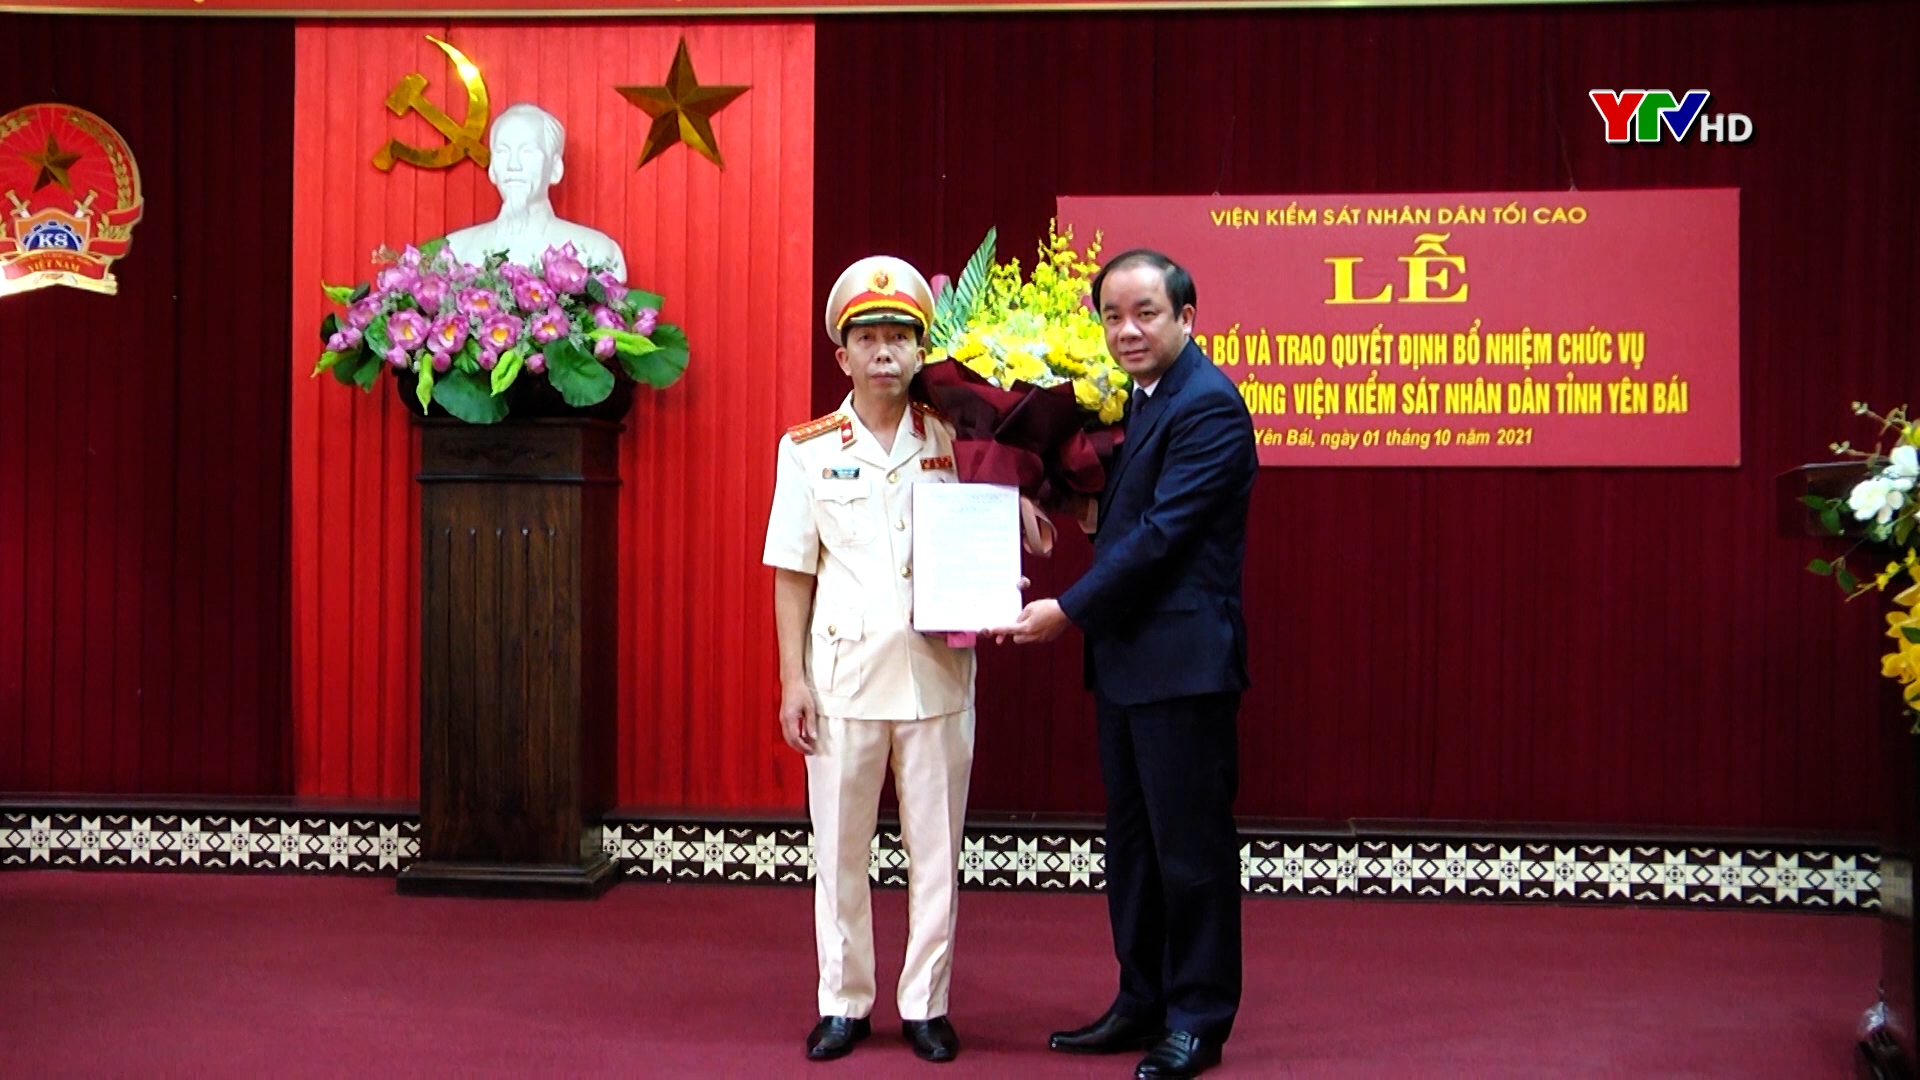 Đồng chí Trần Minh Tuấn được bổ nhiệm giữ chức vụ Phó Viện trưởng Viện Kiểm sát nhân dân tỉnh Yên Bái